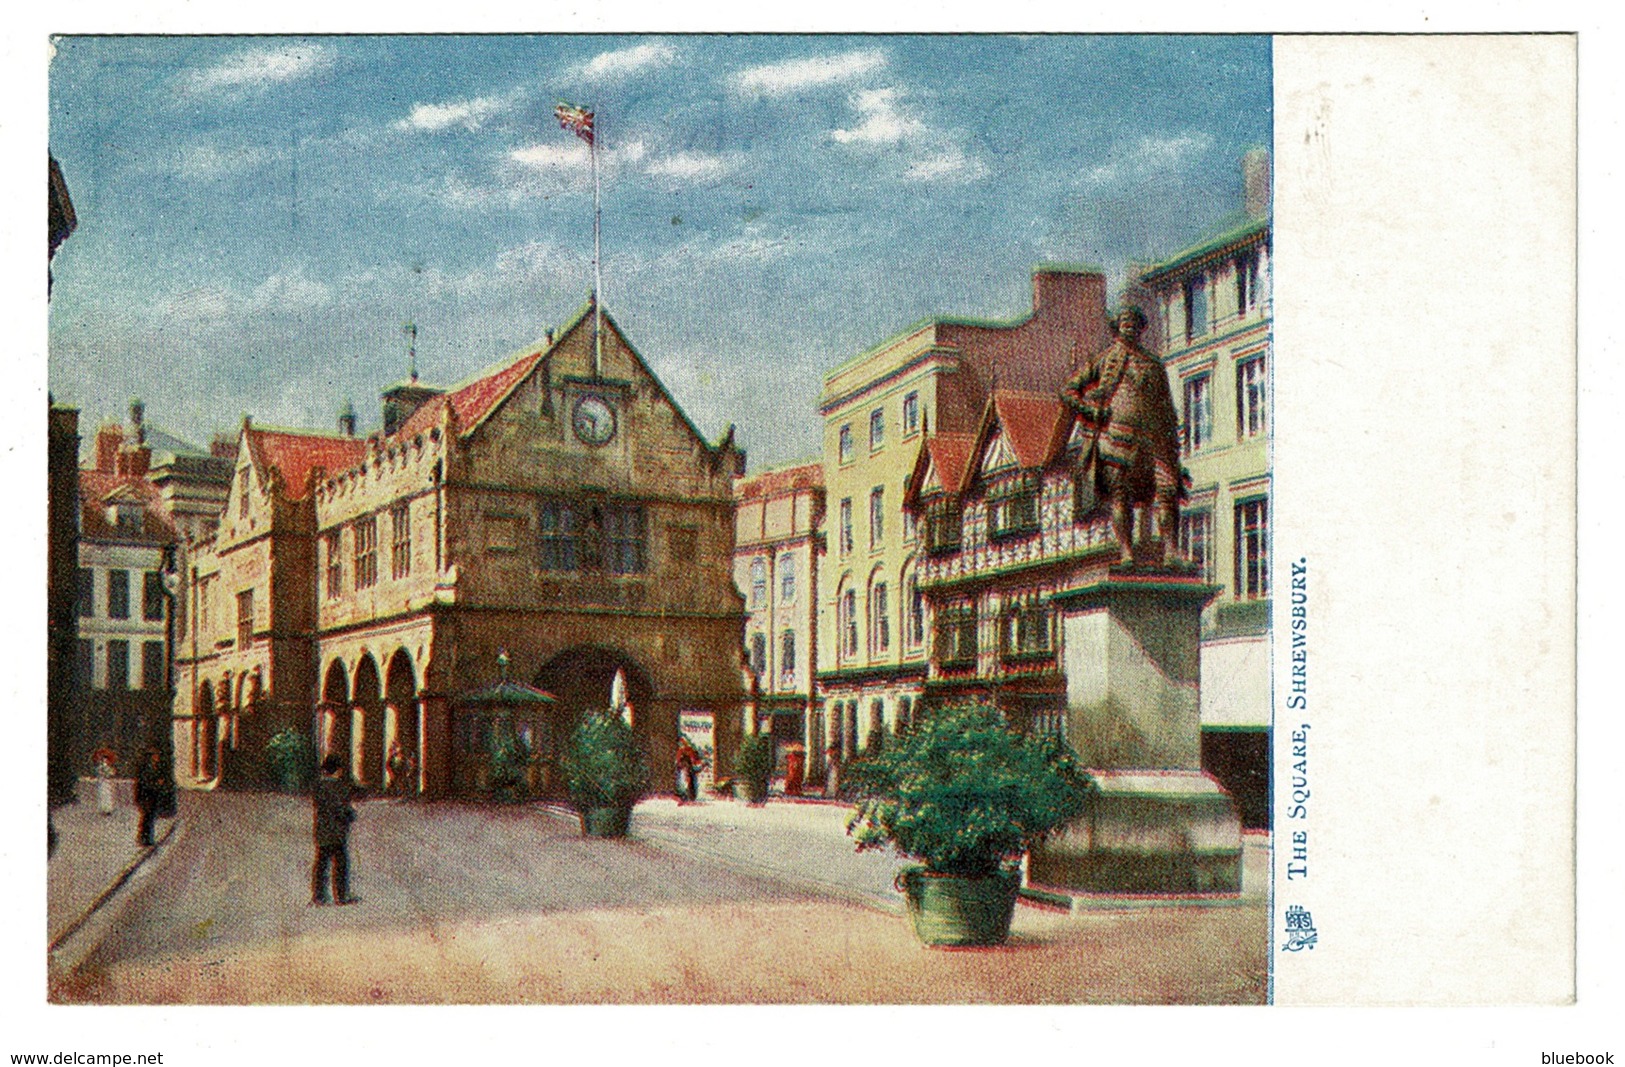 Ref 1396 - Early Raphael Tuck Postcard - The Square Shrewsbury - Shropshire Salop - Shropshire